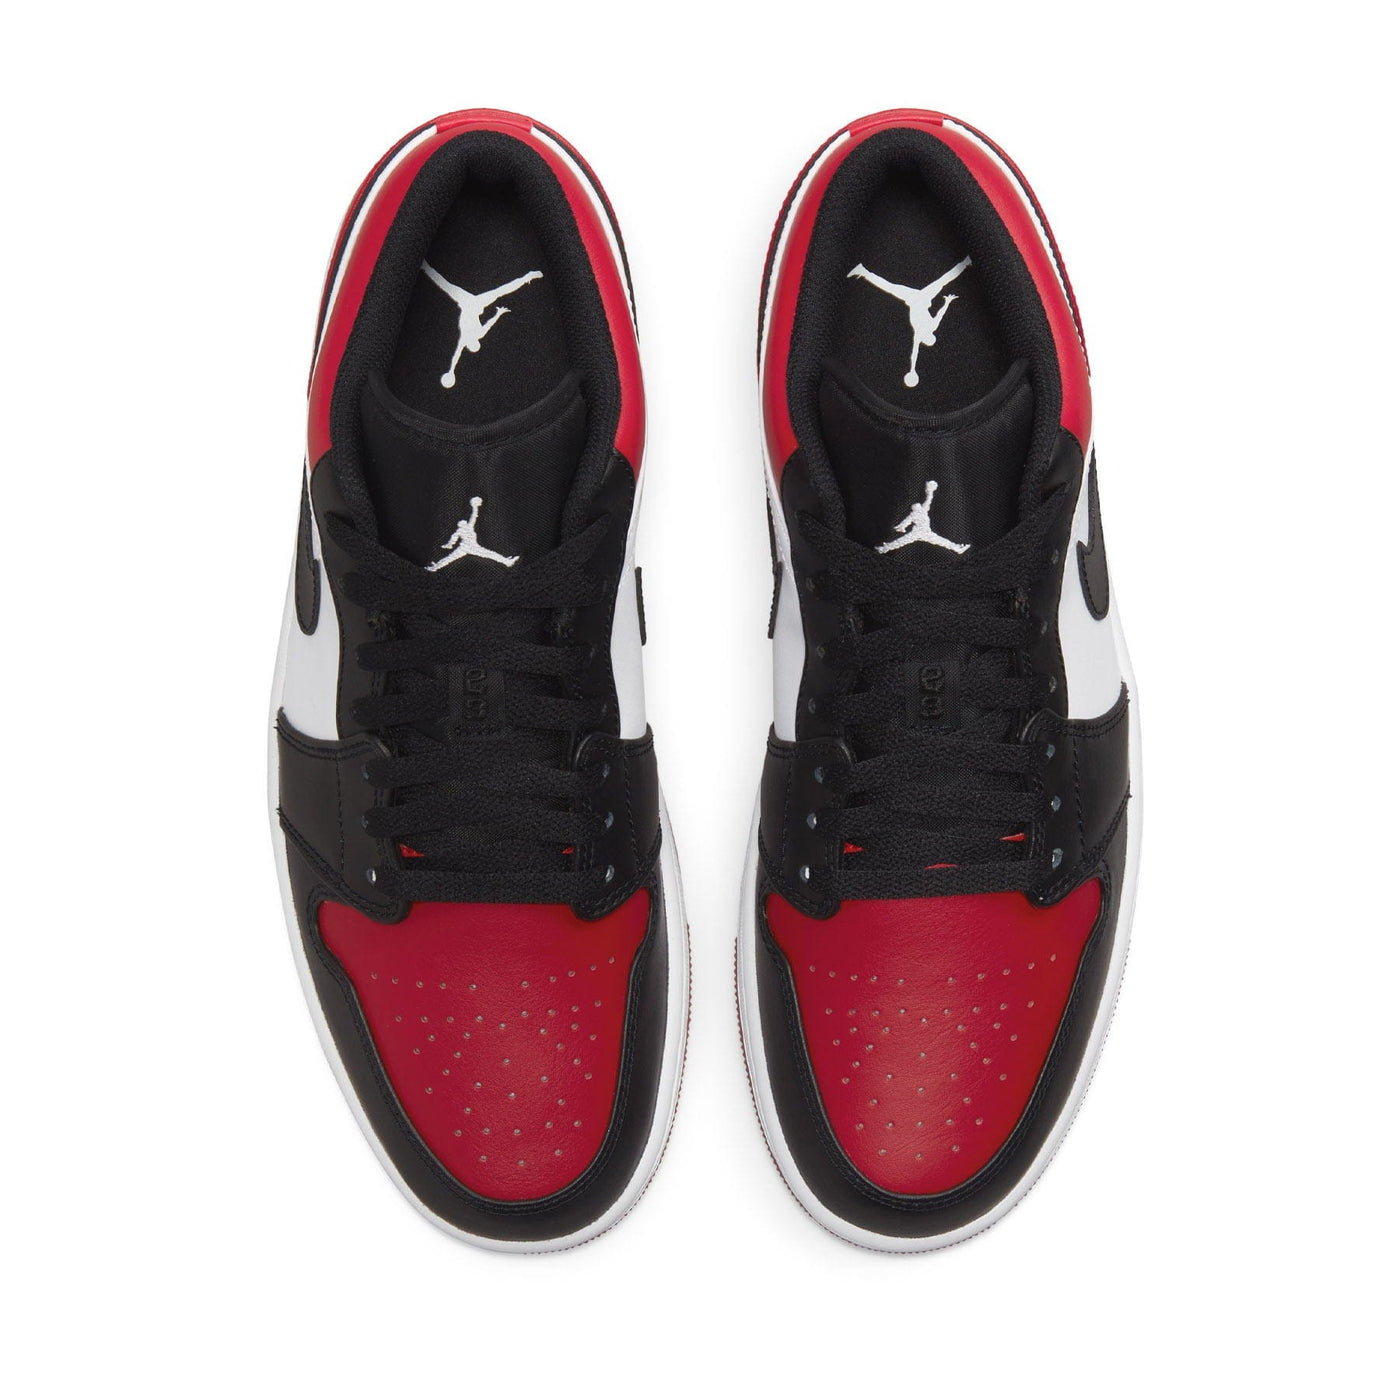 Air Jordan 1 Low Bred Toe